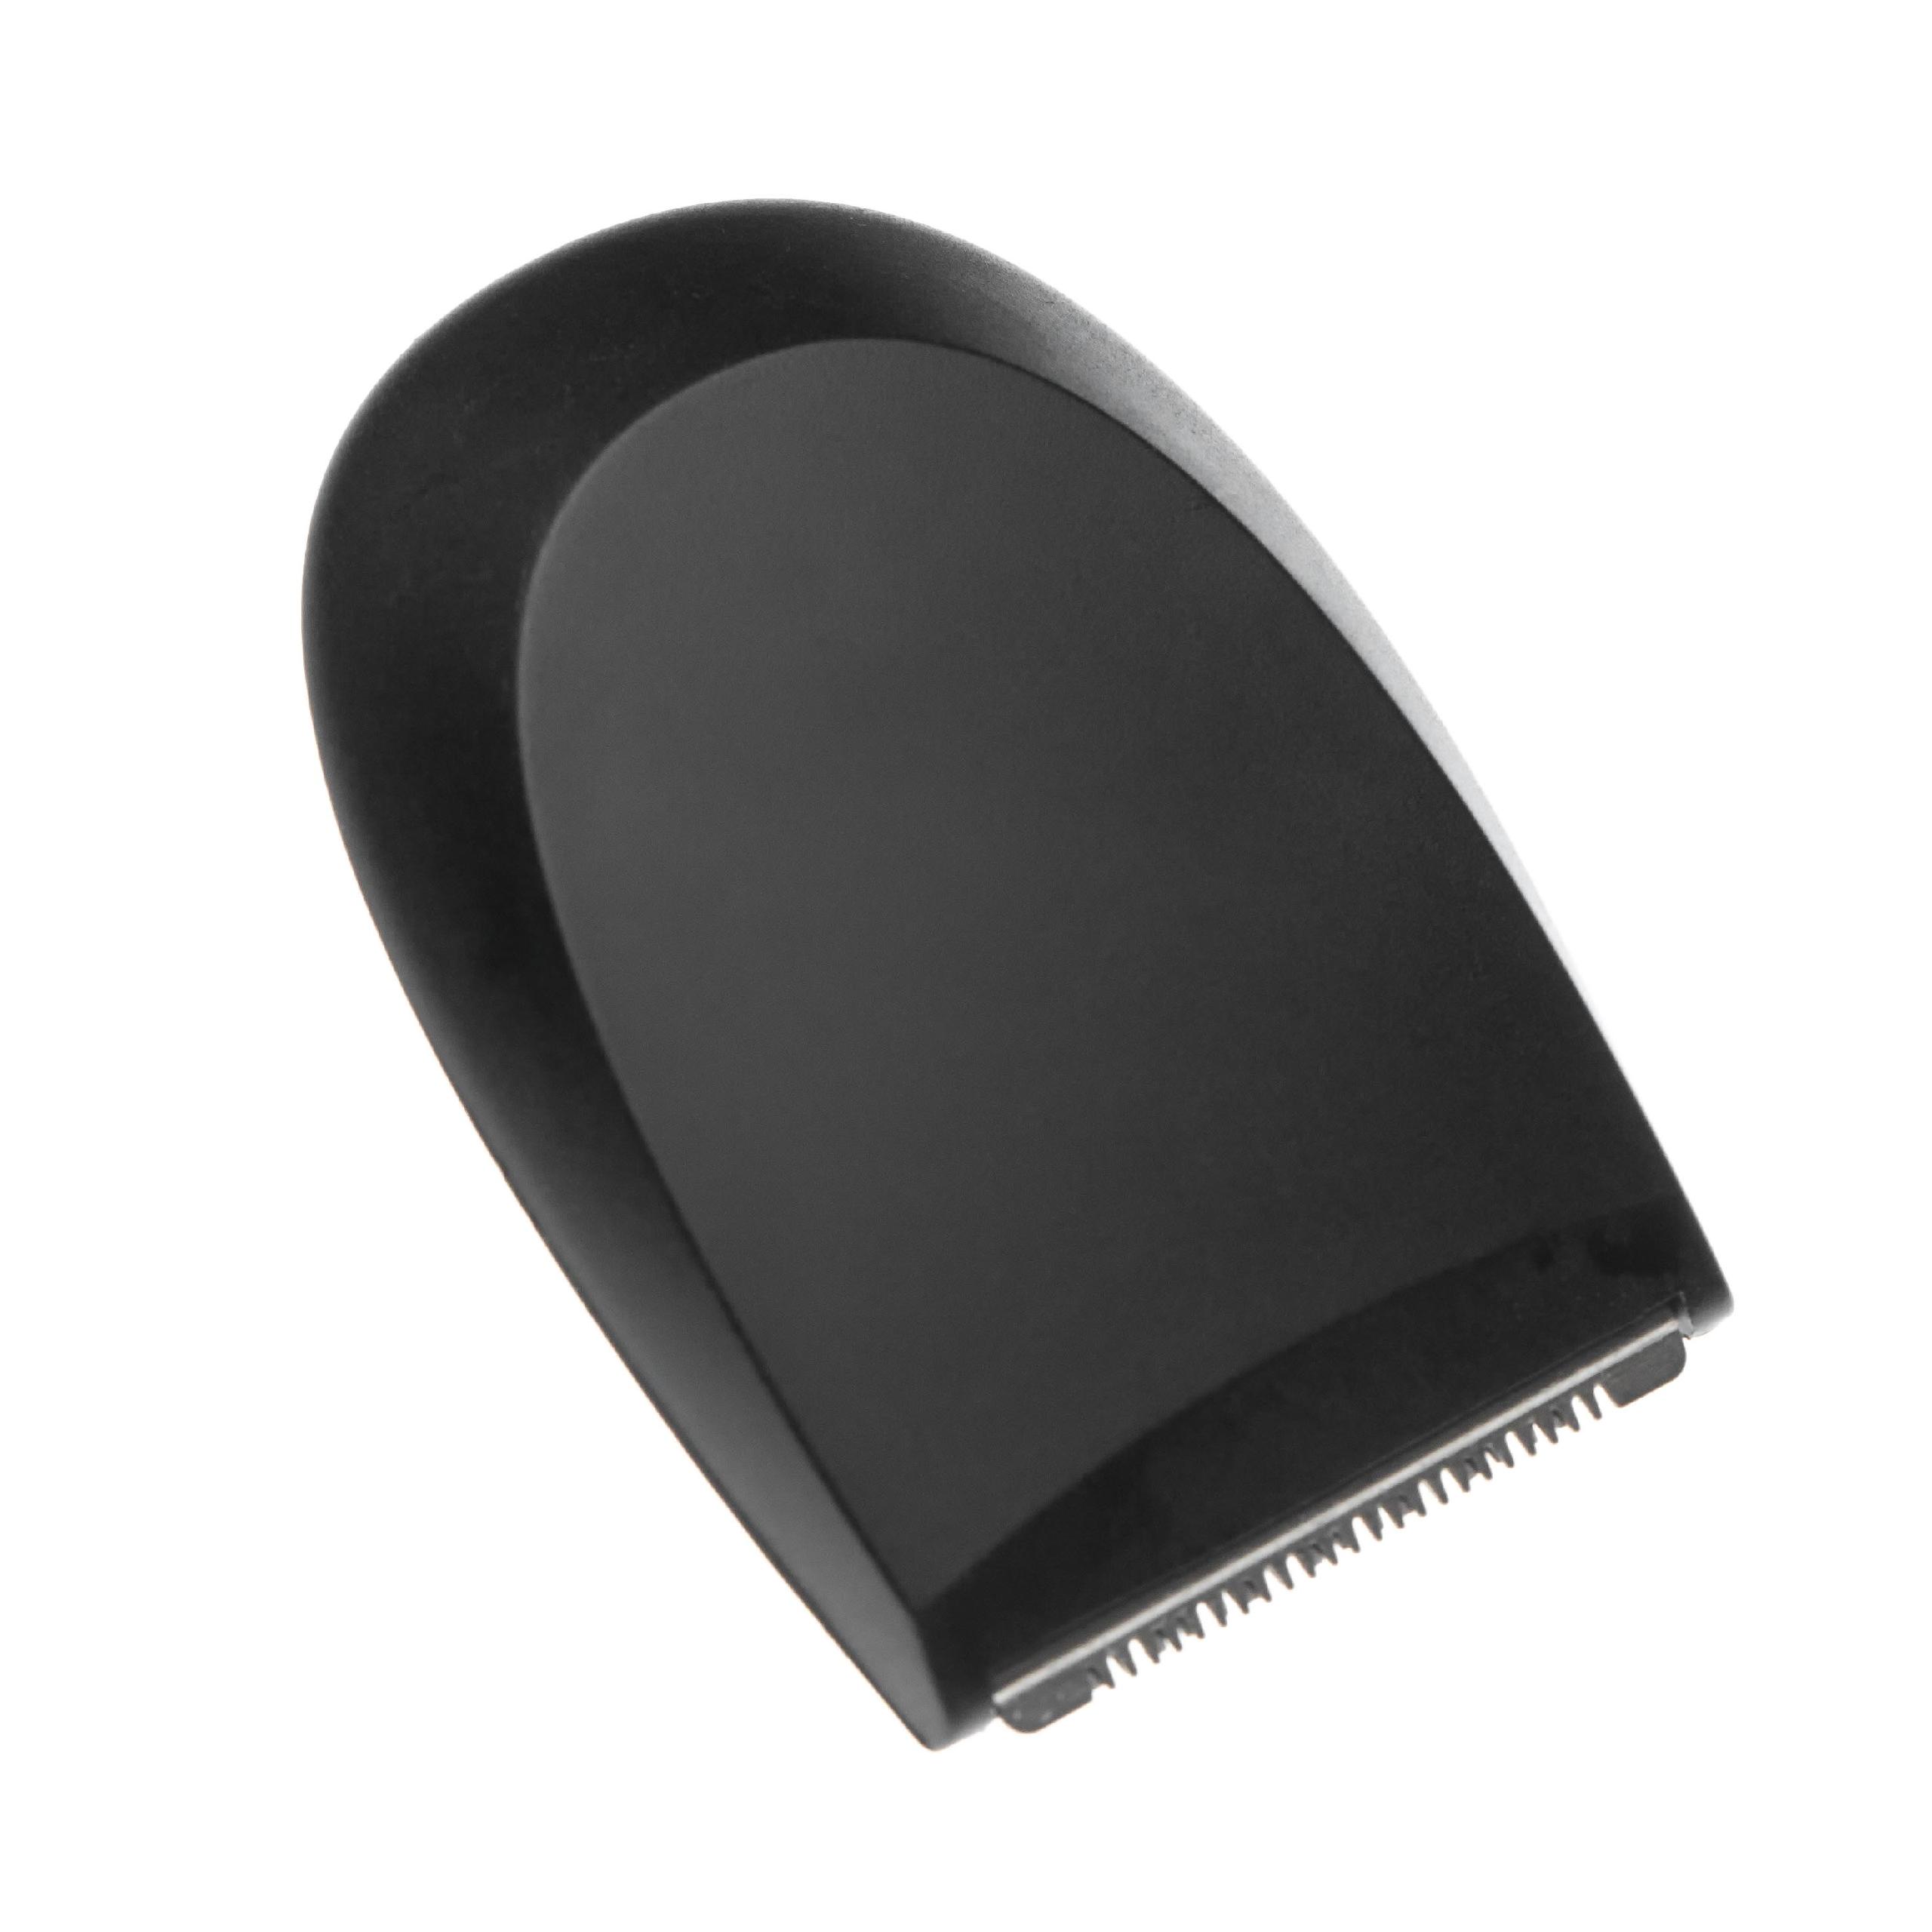 Accesorio de corte para Philips S7310 afeitadora, etc. - Accesorio de barba con sistema smart click